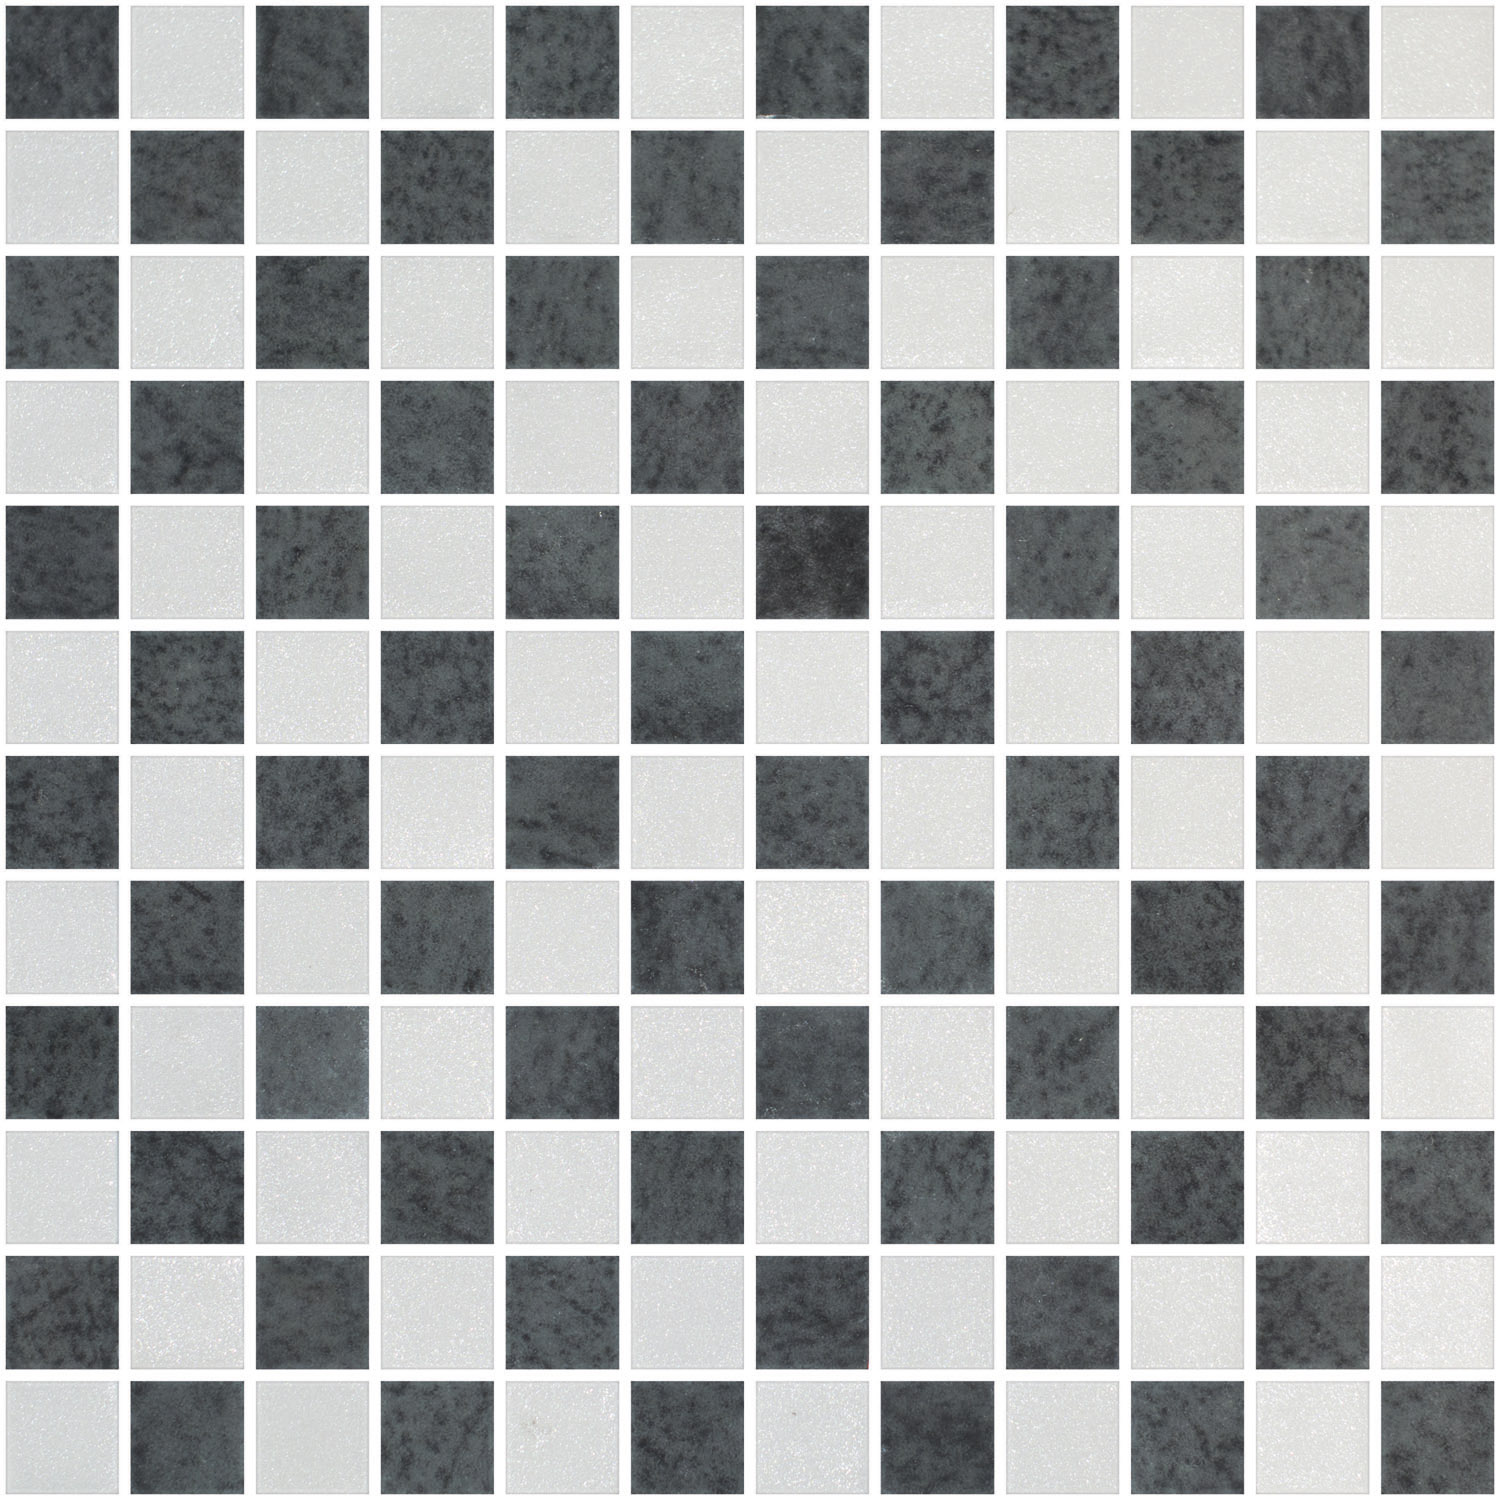 Squares Pattern 3